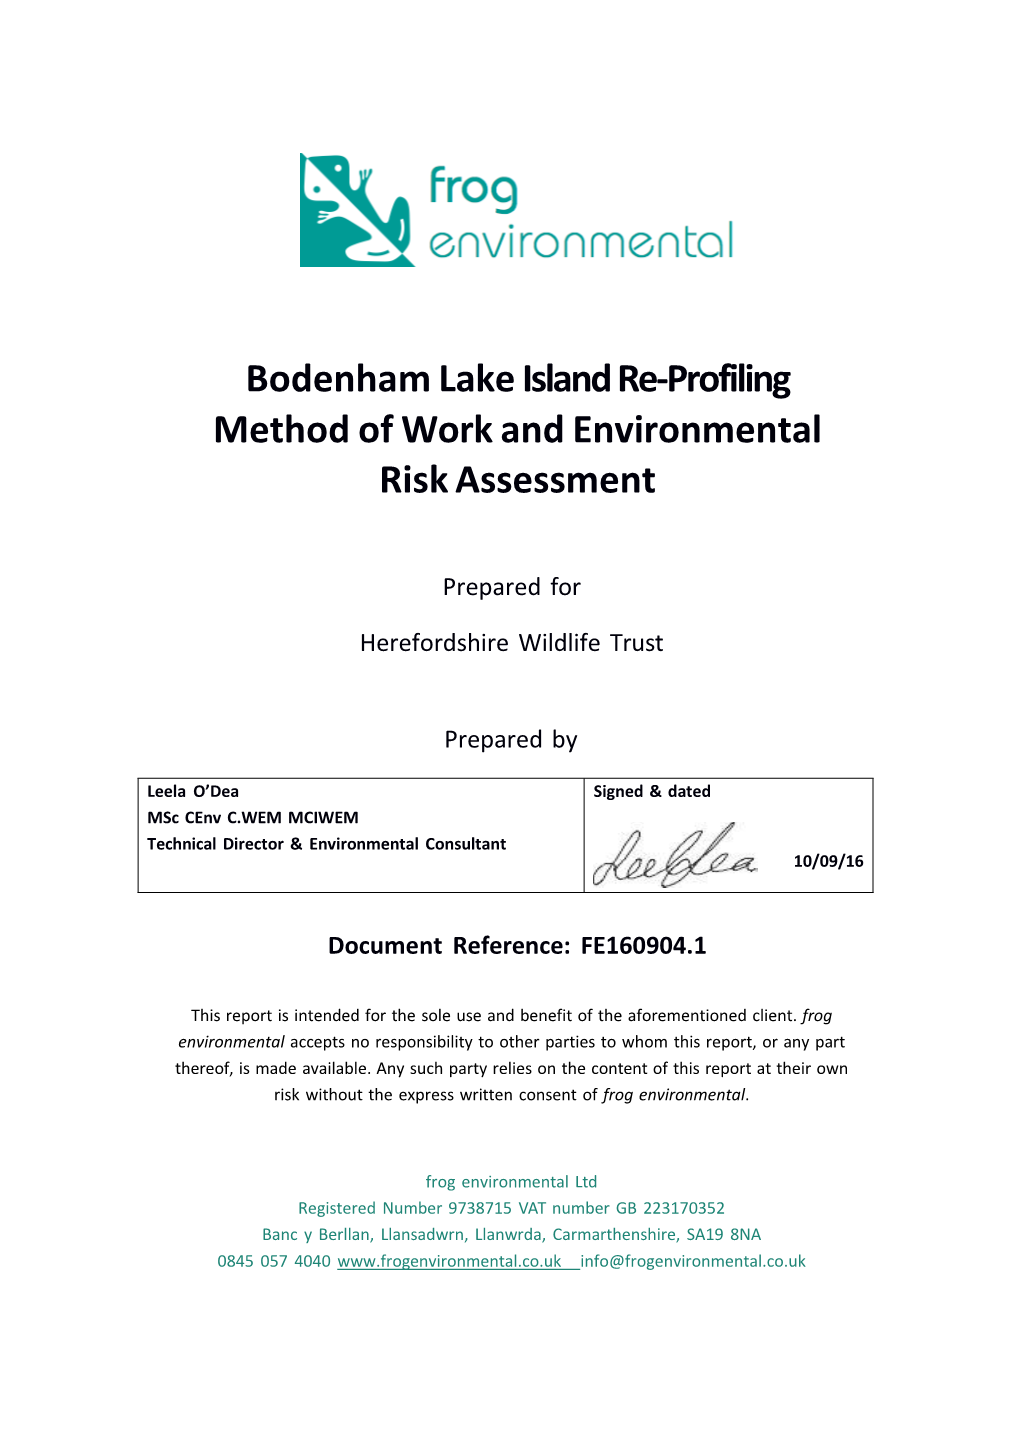 Bodenham Lake Island Re-Profiling Method of Work and Environmental Risk Assessment